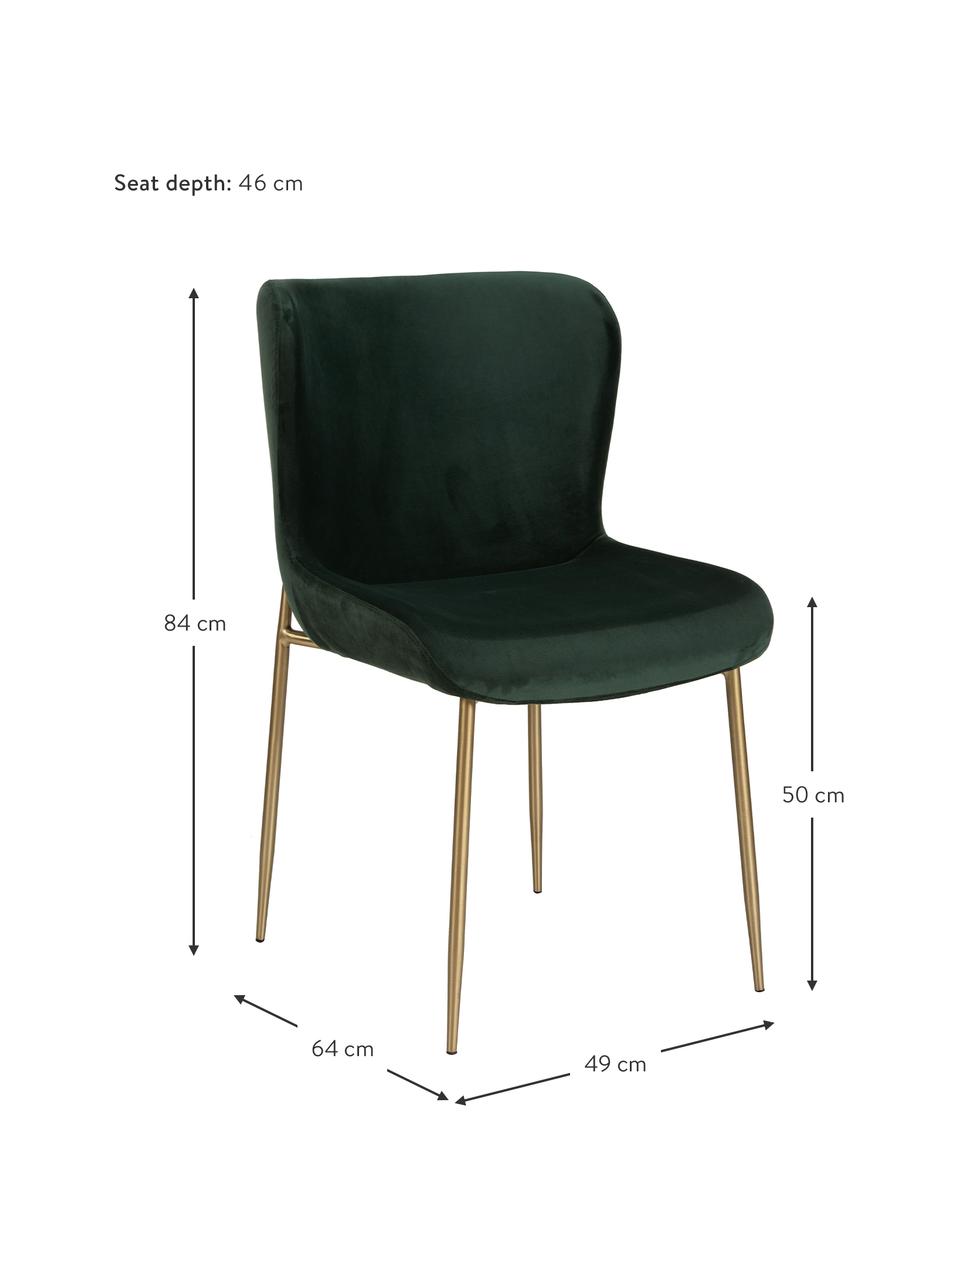 Krzesło tapicerowane z aksamitu Tess, Tapicerka: aksamit (poliester) Dzięk, Nogi: metal malowany proszkowo, Zielony aksamit, odcienie złotego, S 49 x G 64 cm